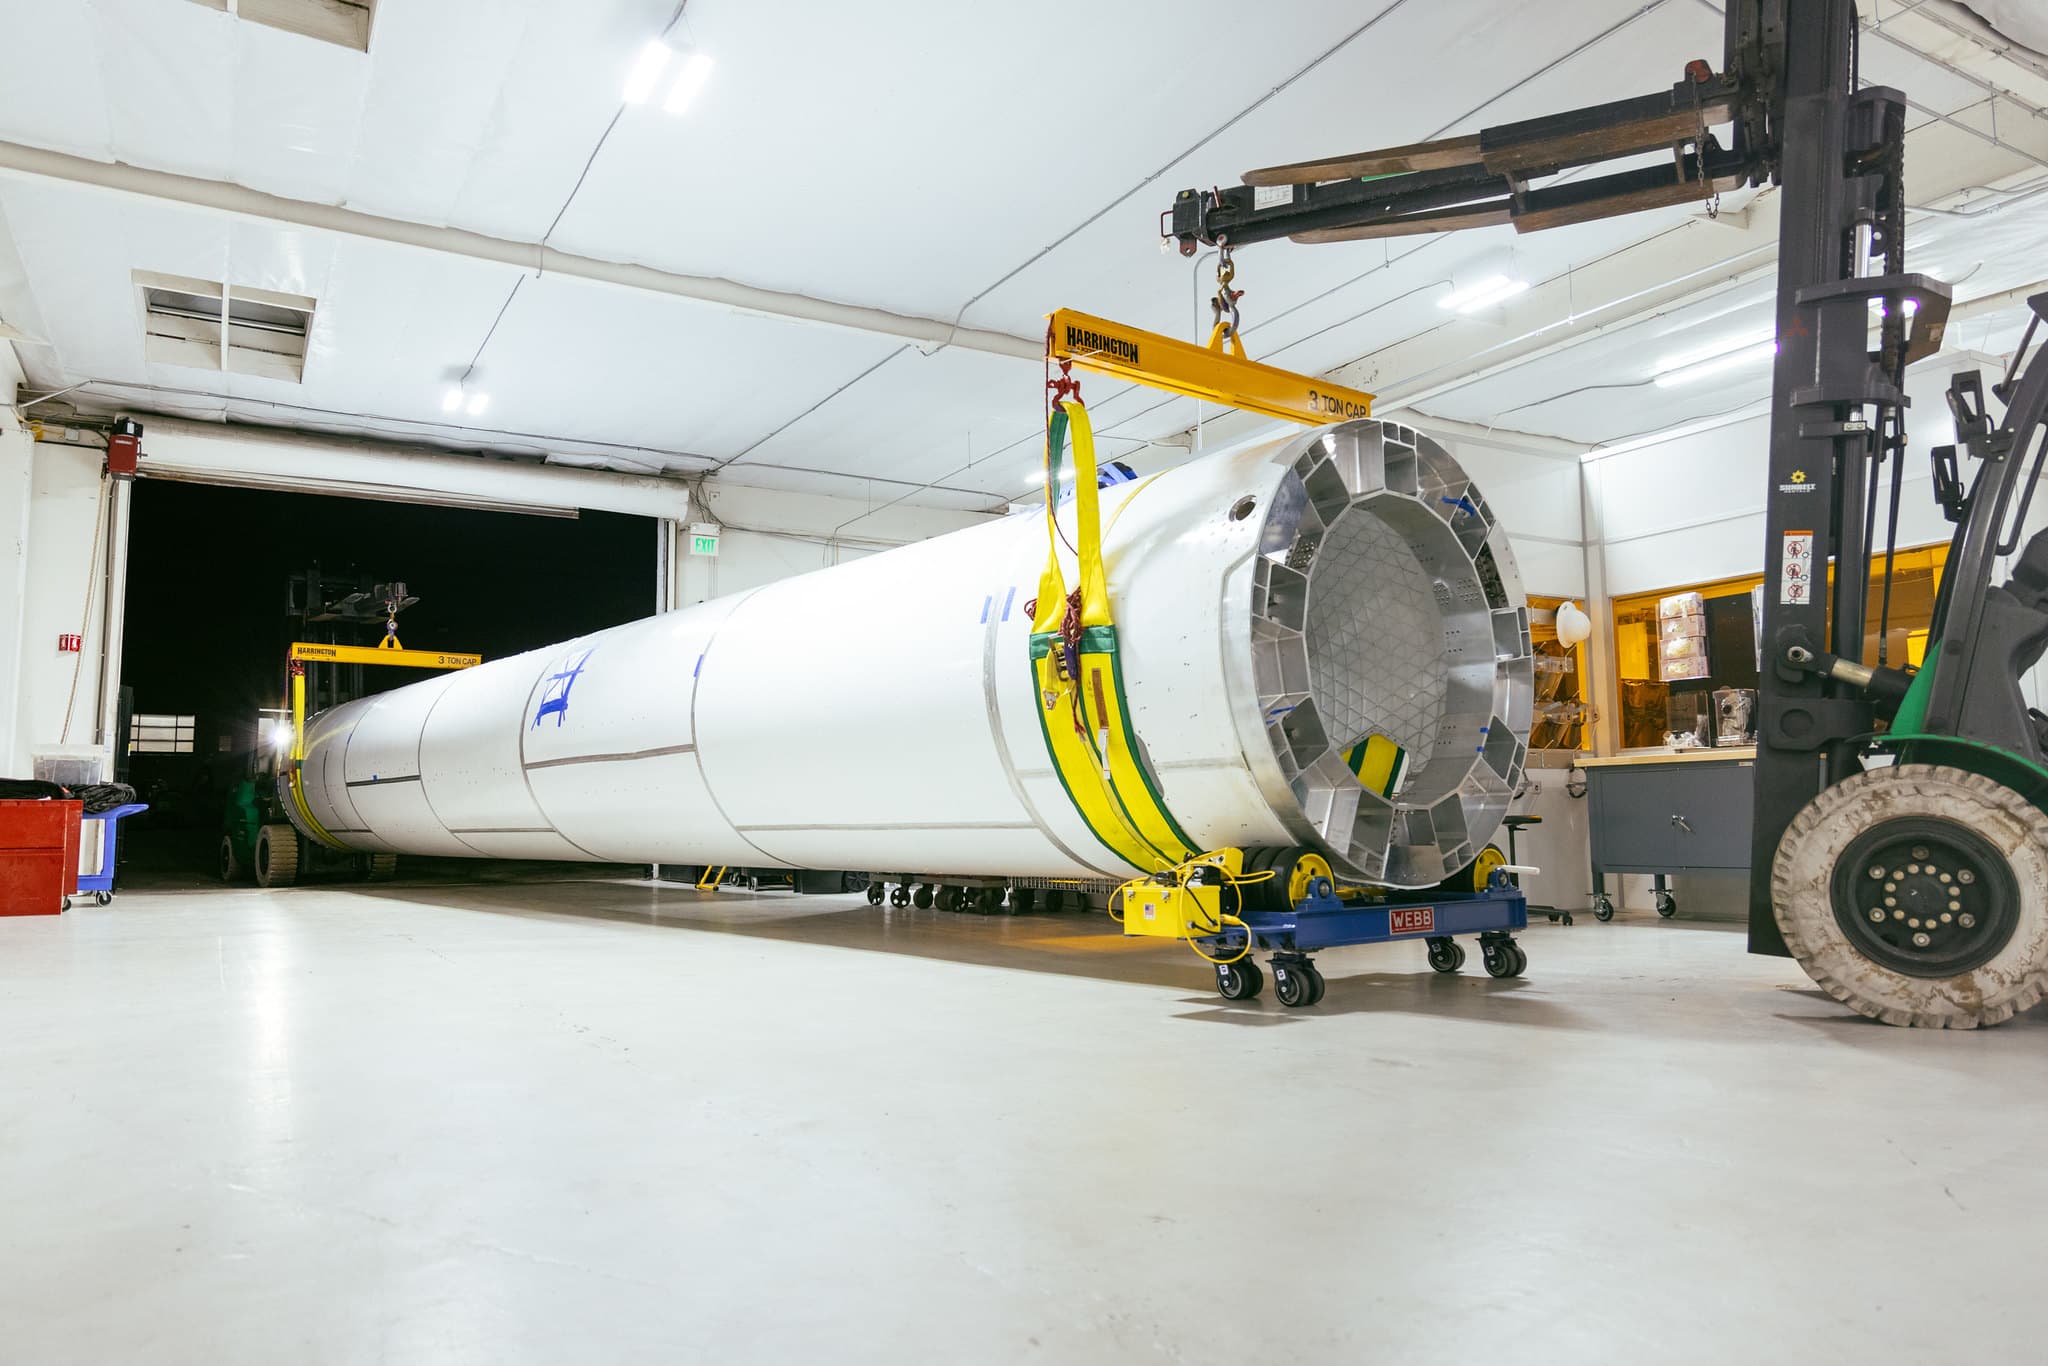 Rocket builder ABL Space raises $200 million at $2.4 billion valuation